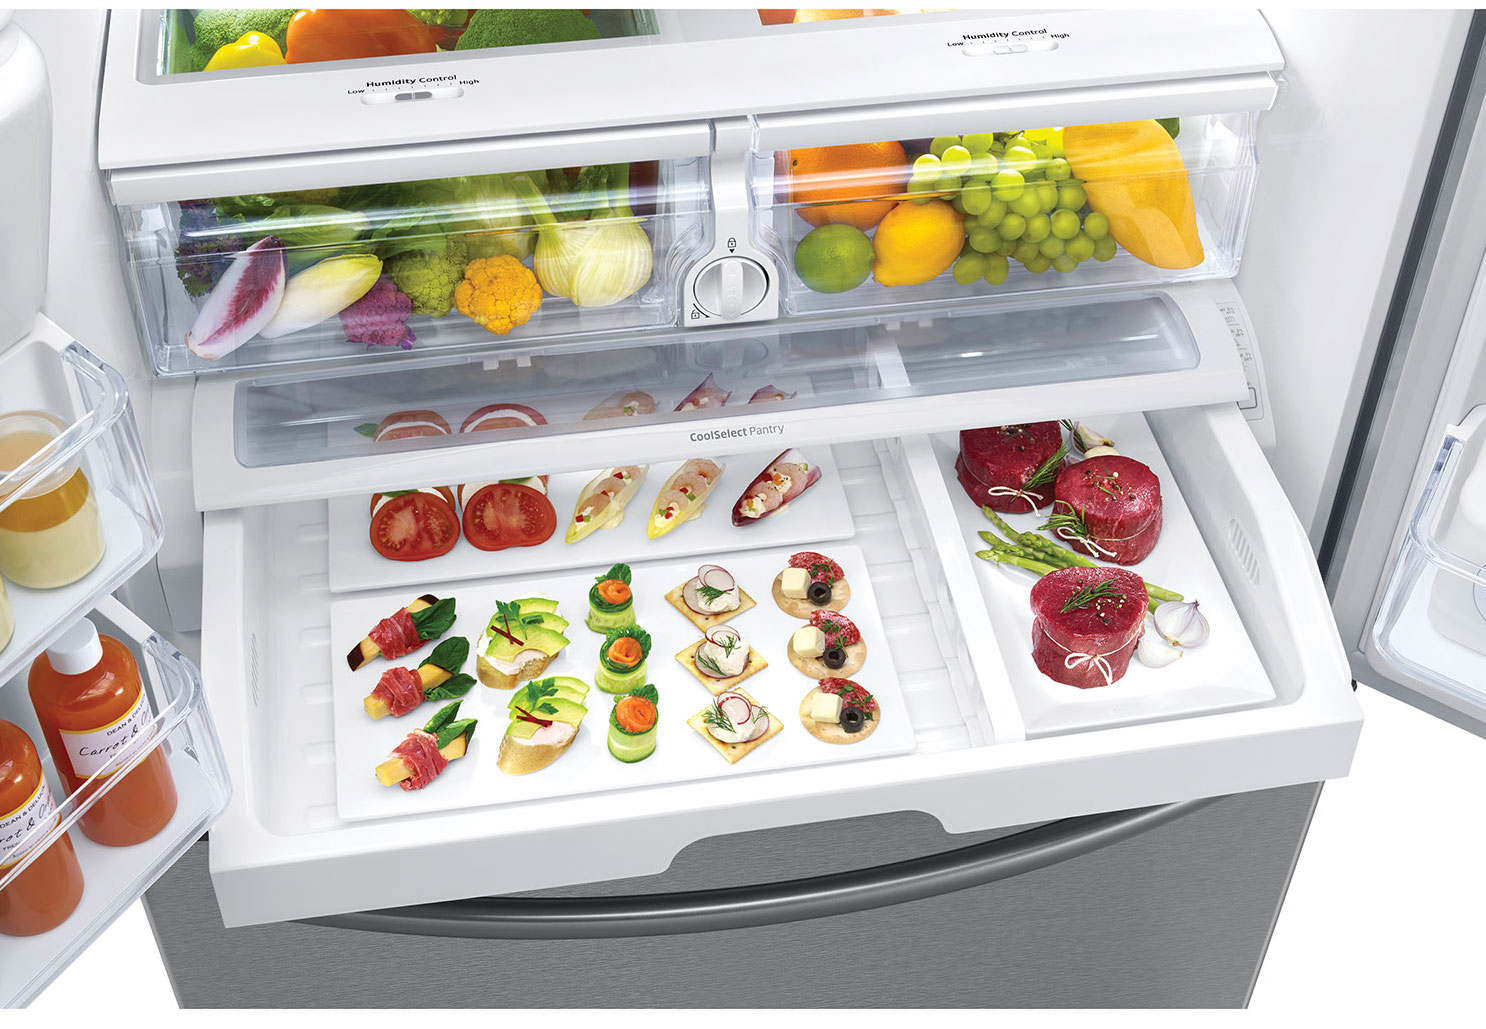 Quel est le meilleur emplacement pour les aliments dans un réfrigérateur et un congélateur?